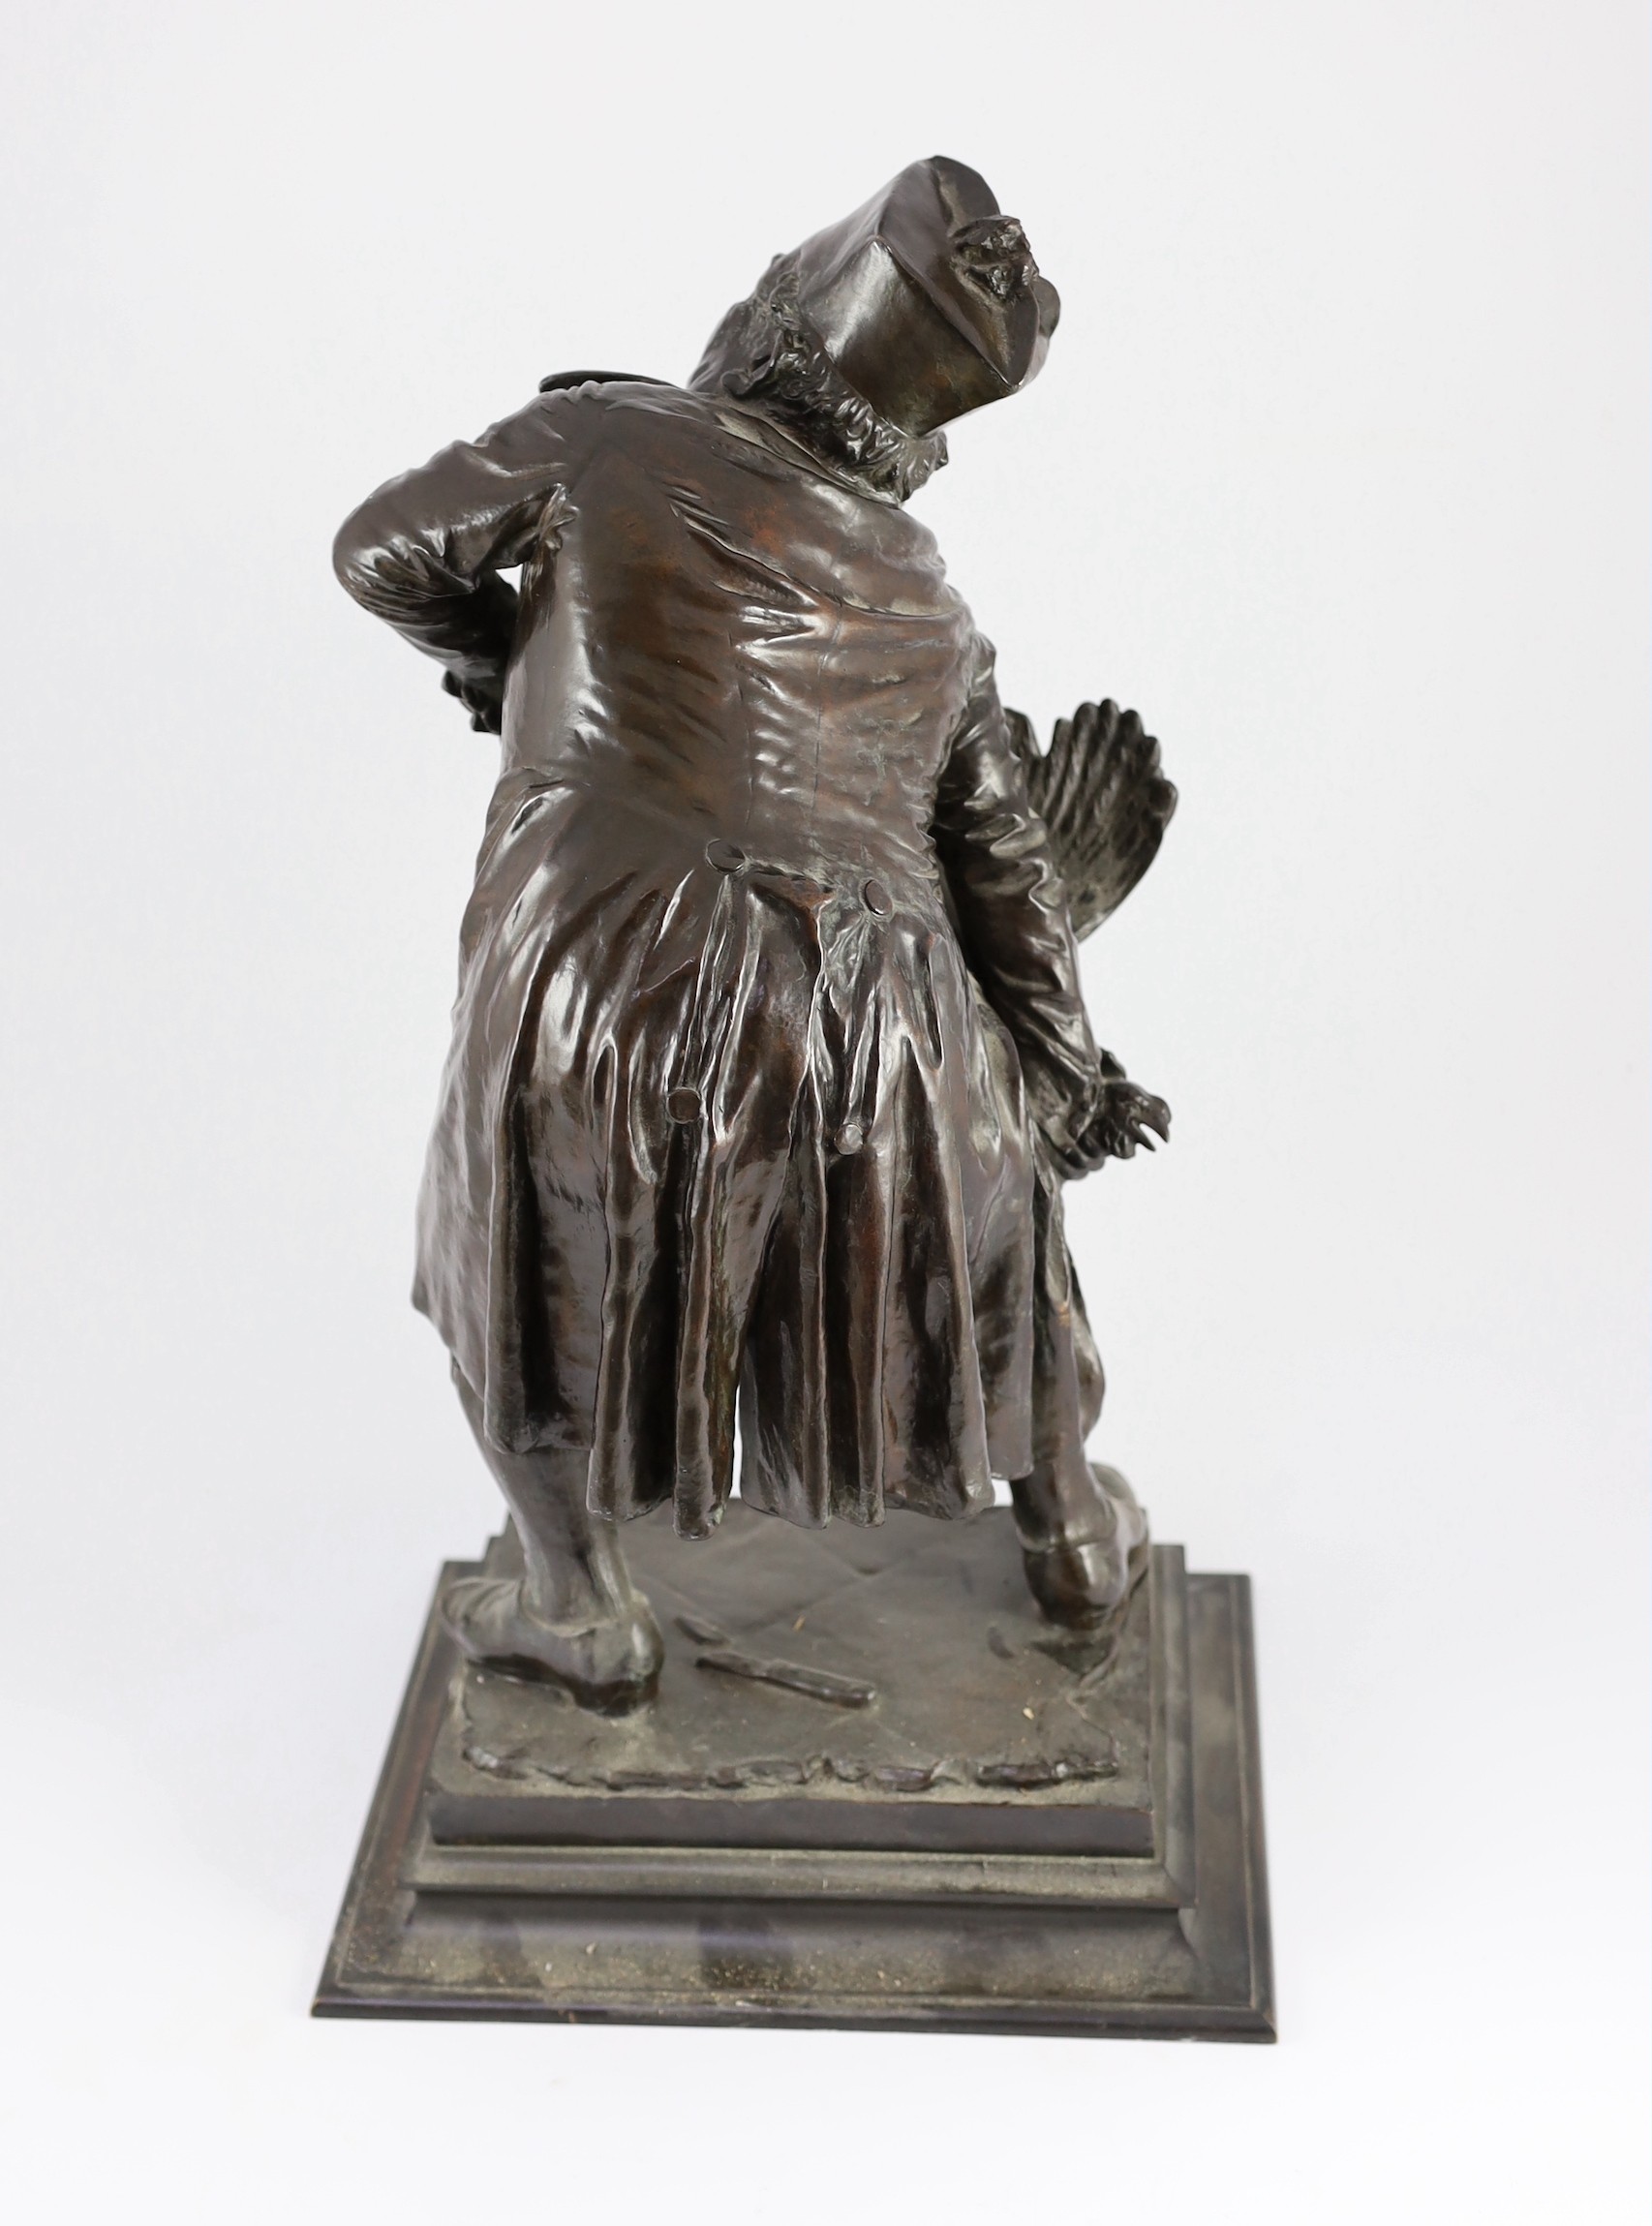 Mauro Benini (Italian, 1856-1915). A bronze figure 'Ego te Absolvo!!', 29cm wide 50cm high